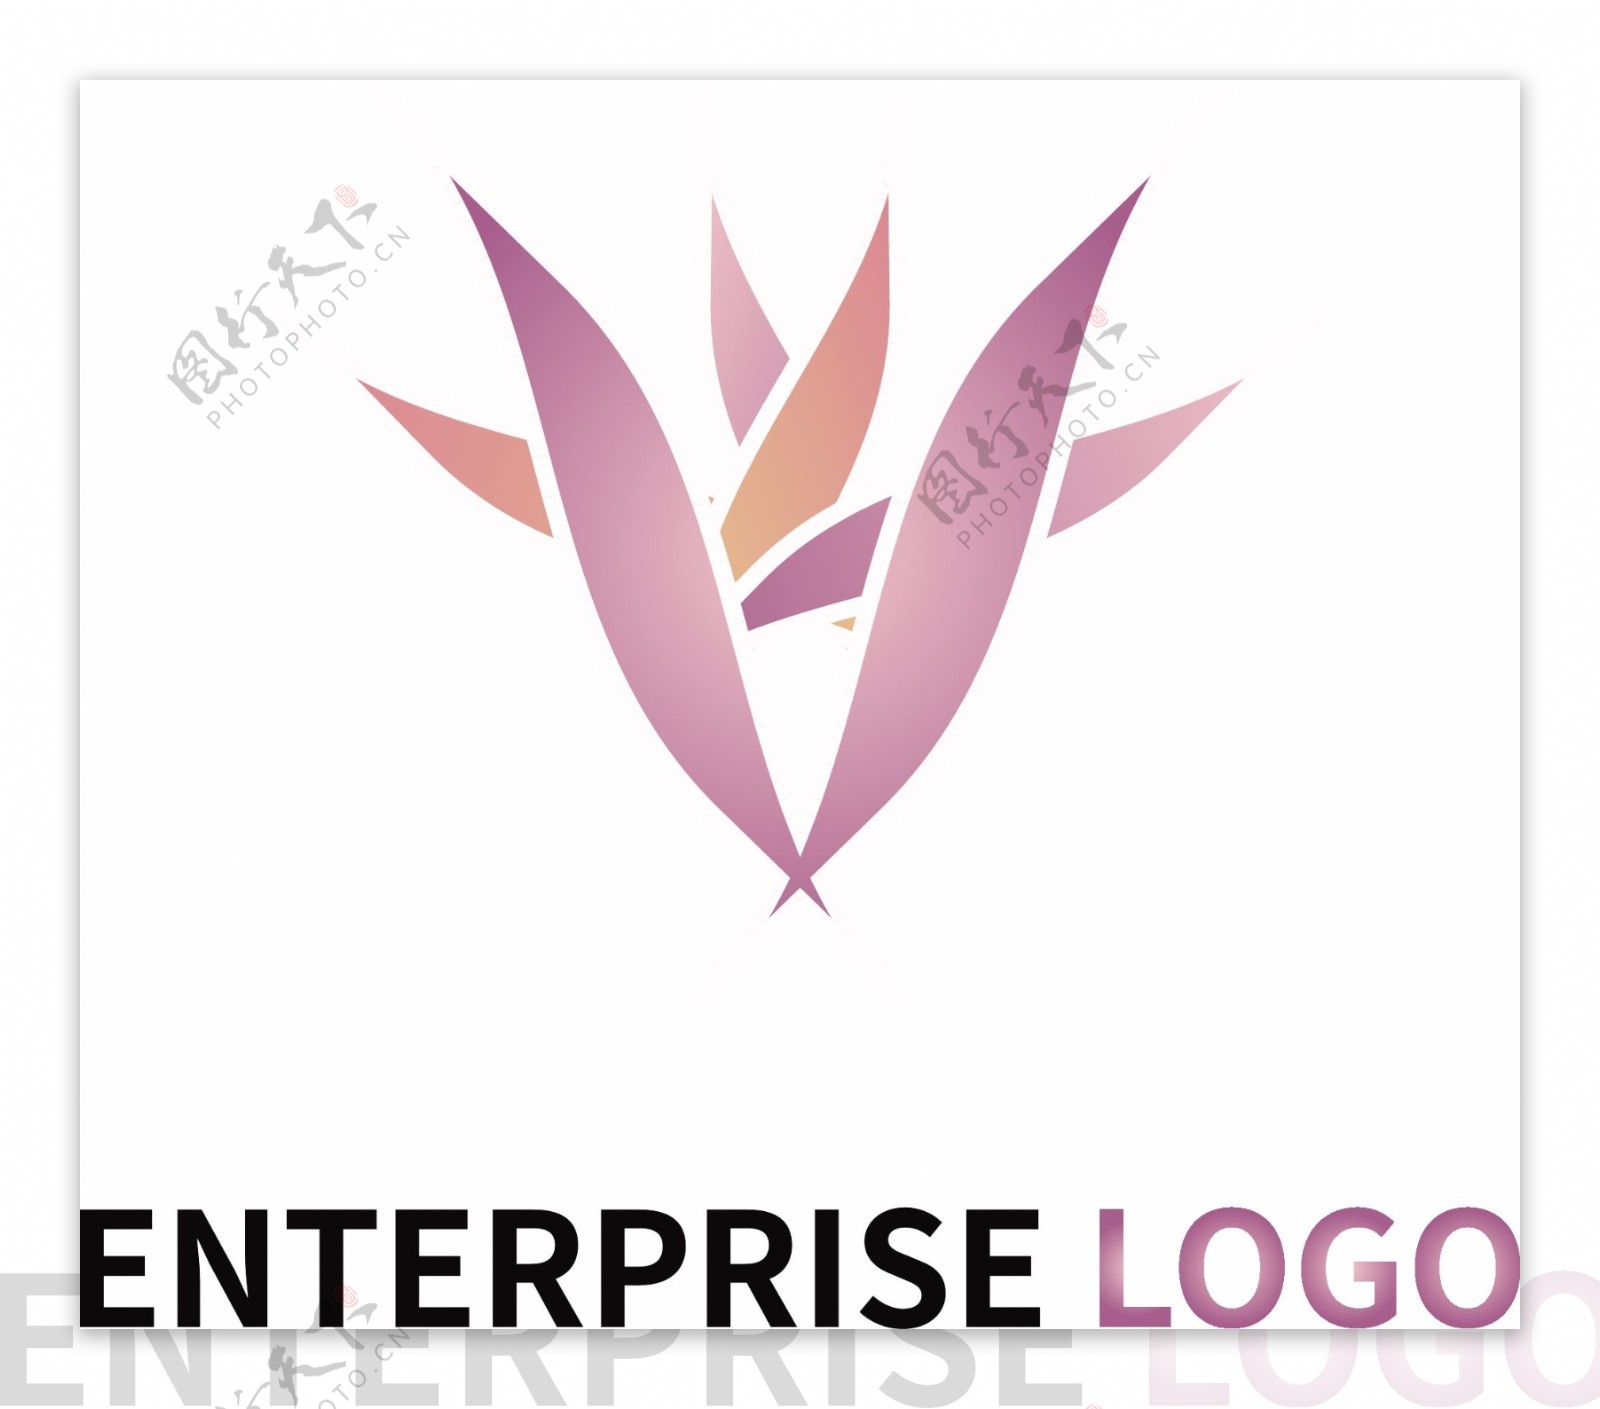 娱乐传媒logo